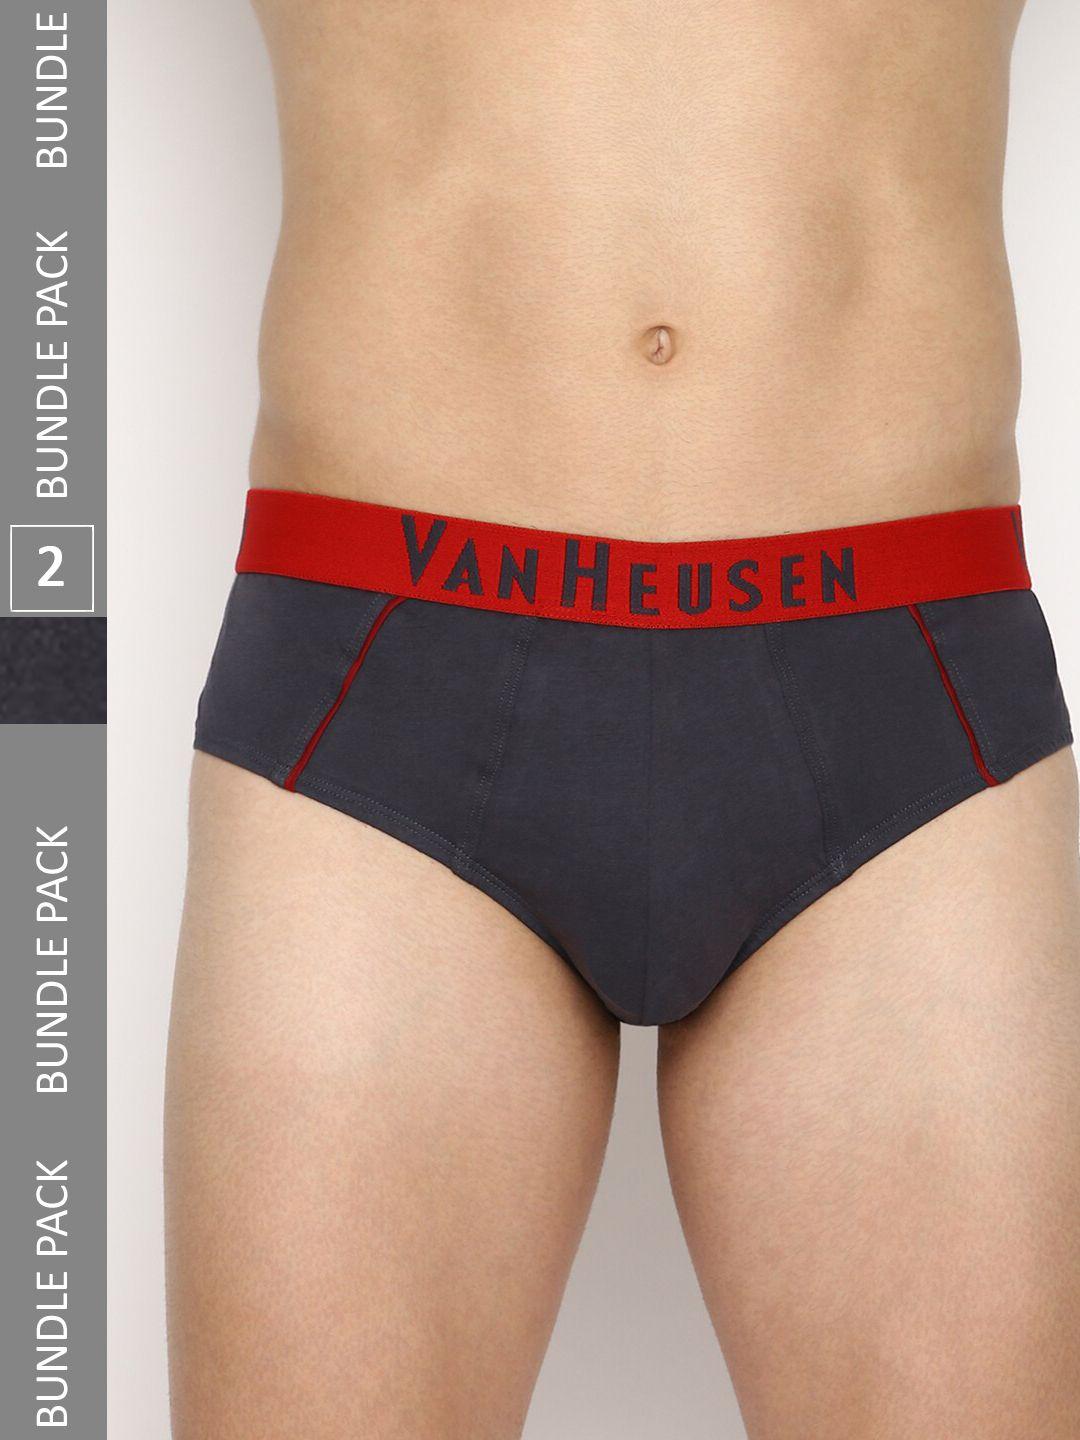 van heusen men pack of 2 mid-rise label free comfort basic briefs- ihqebr2cc210012